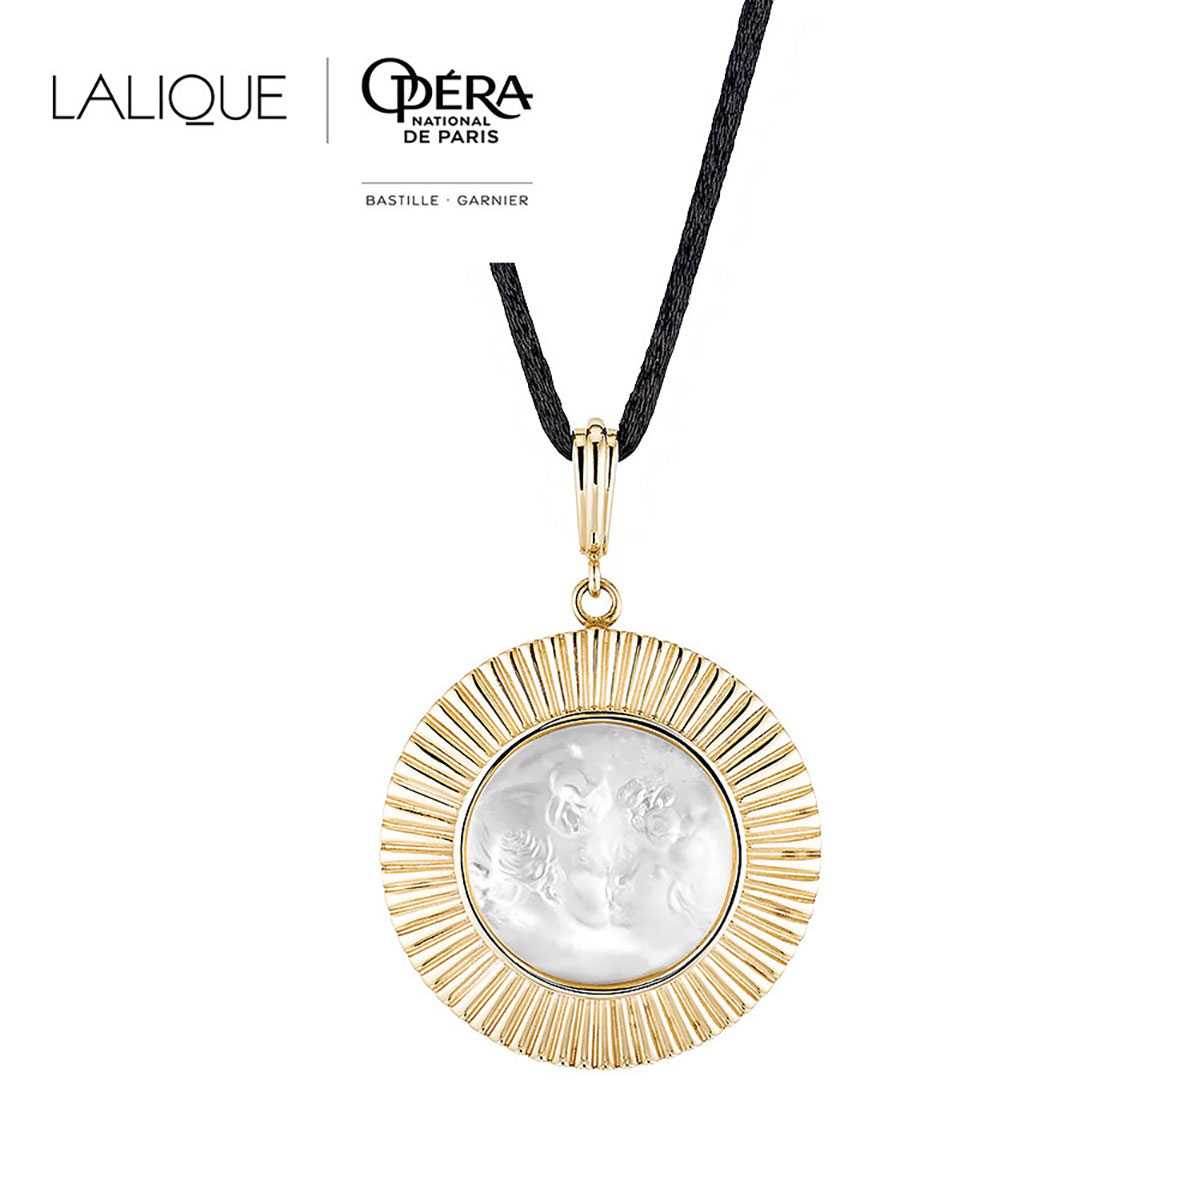 Lalique Le Baiser Pendant Necklace, Gold Vermeil